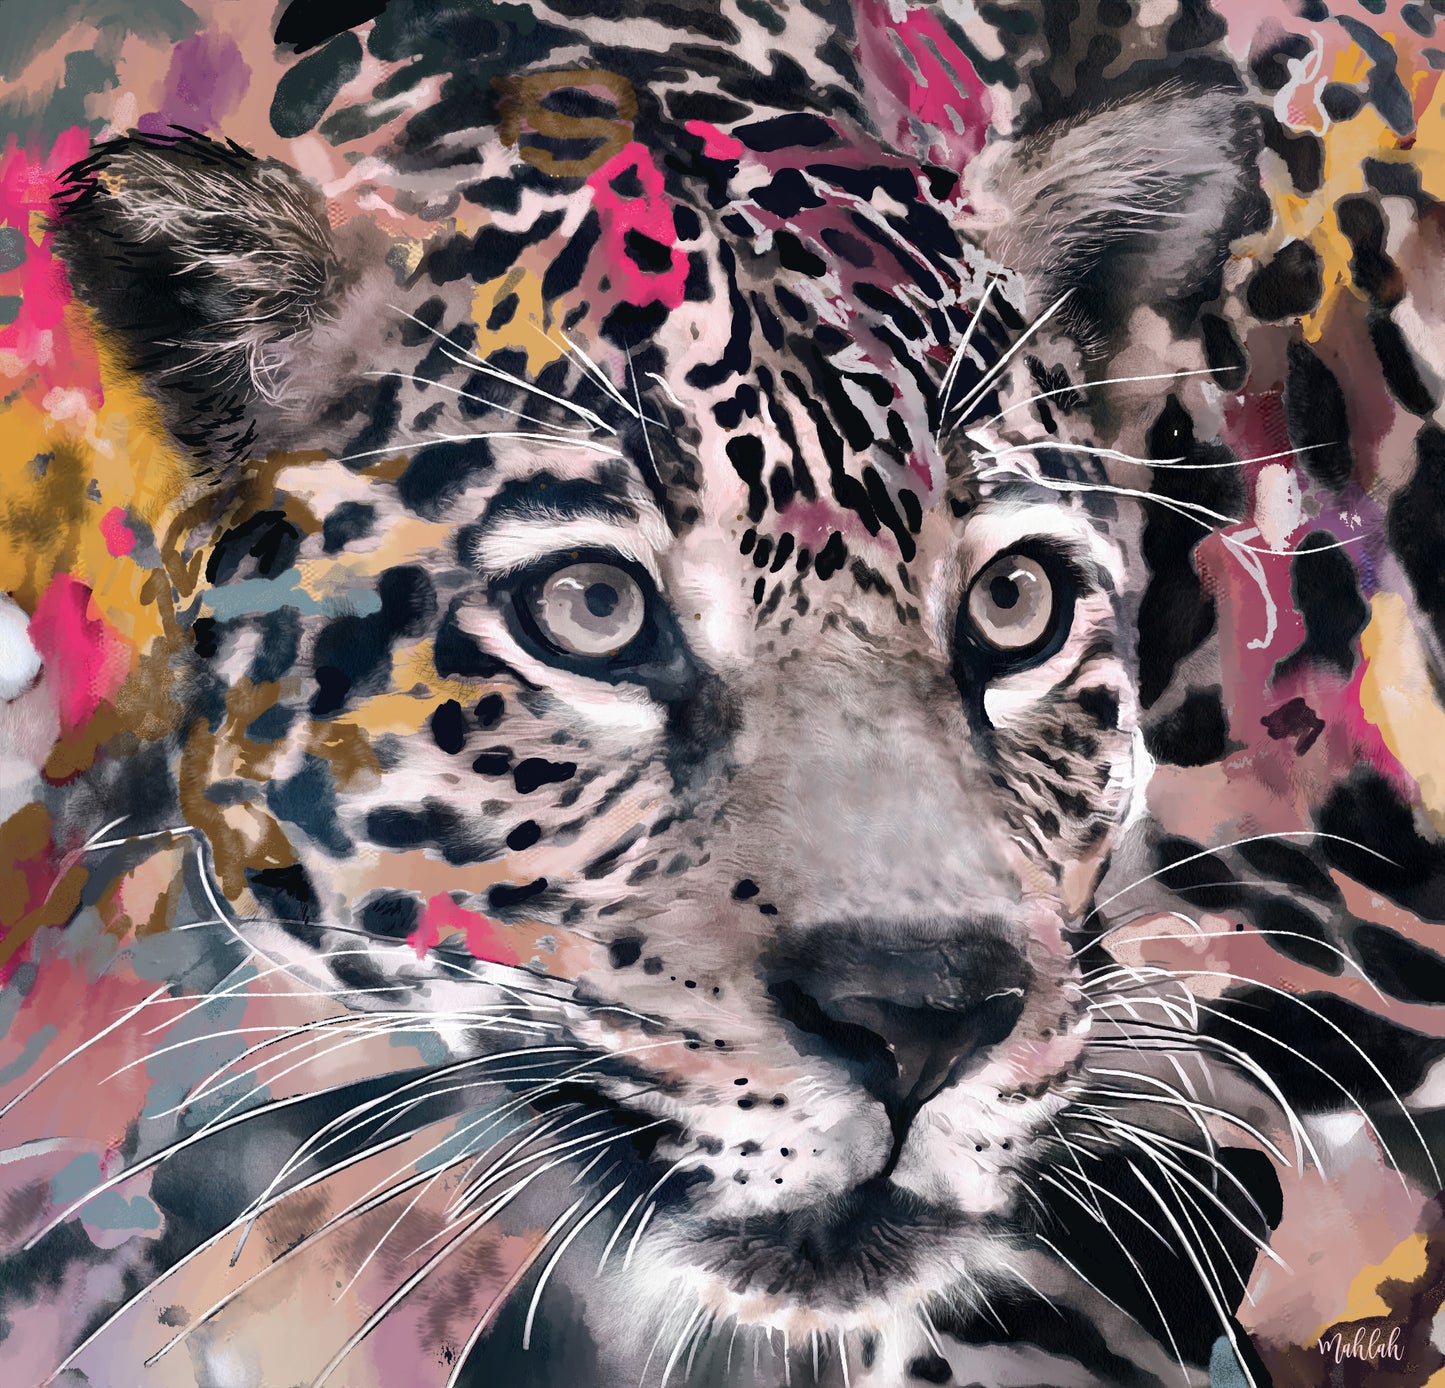 Jaguar Canvas Print